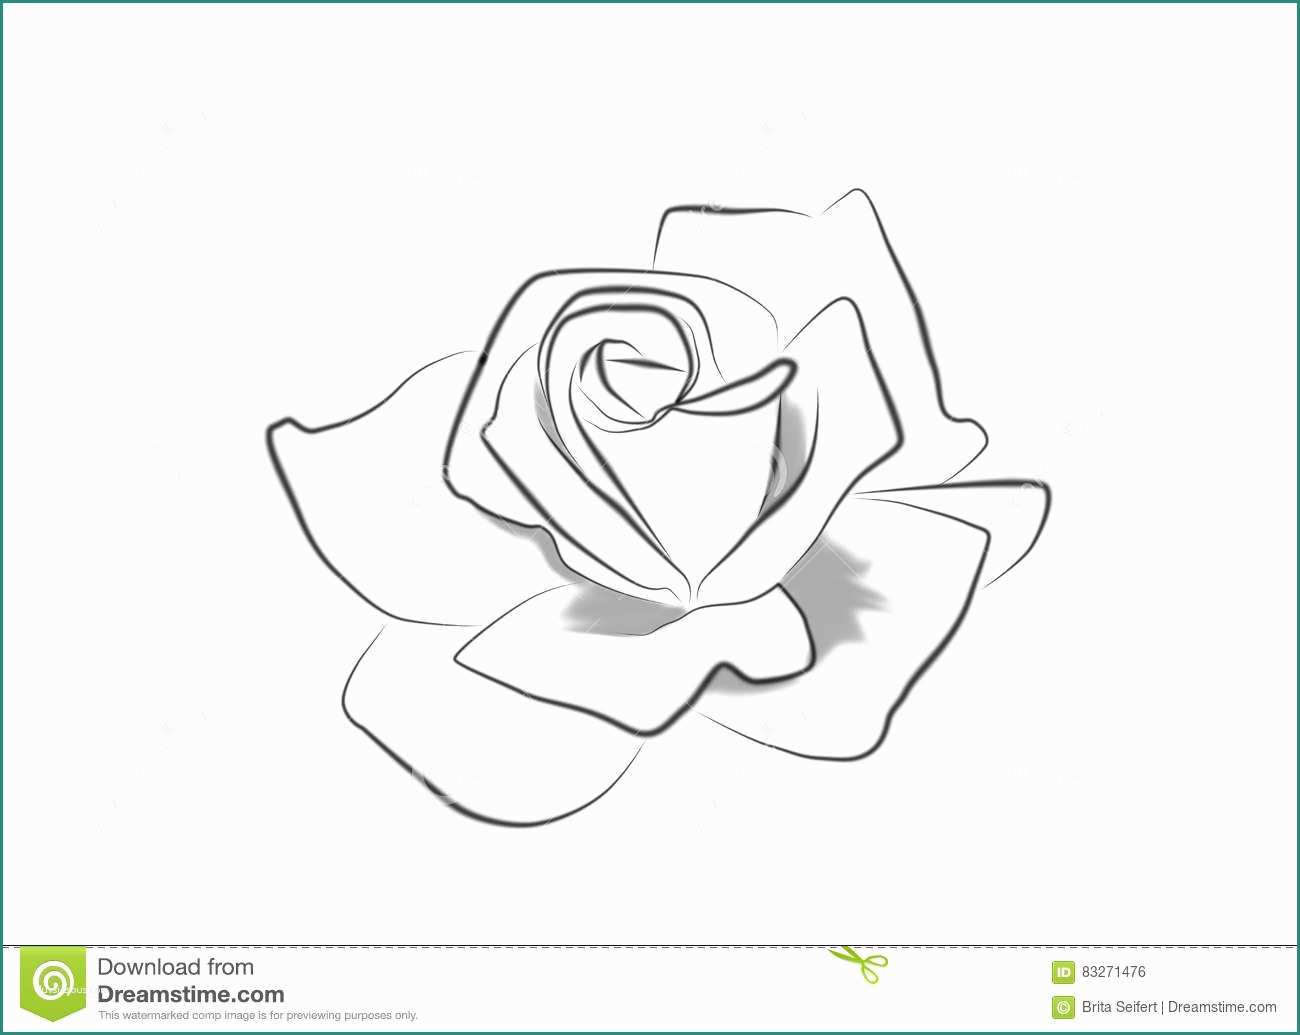 Disegnare Una Rosa E Disegno A Tratteggio Di Una Rosa Illustrazione Di Stock